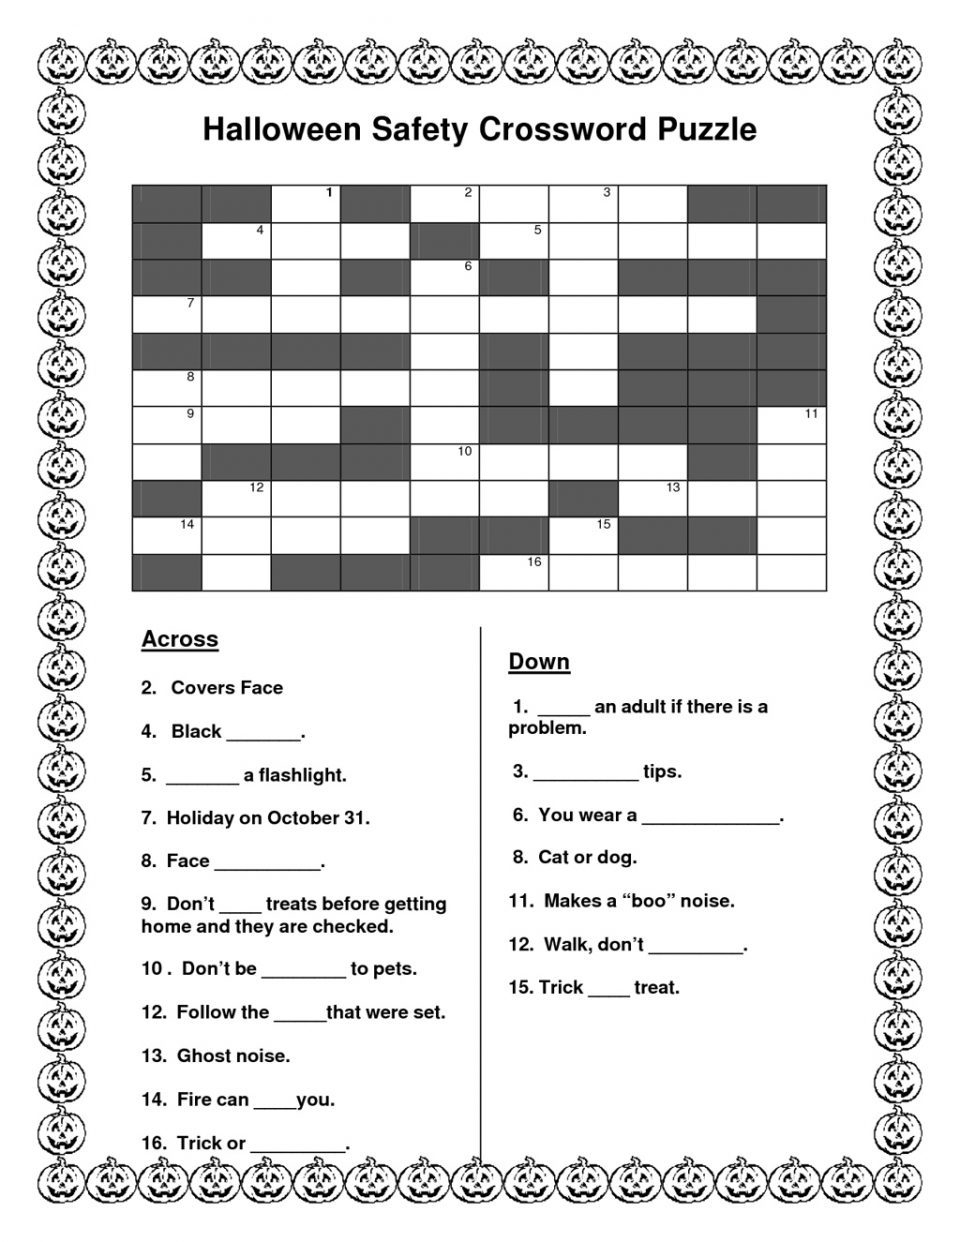 Crosswords Halloween Crossword Puzzle Printable Easy History Of - Halloween Crossword Printable Free